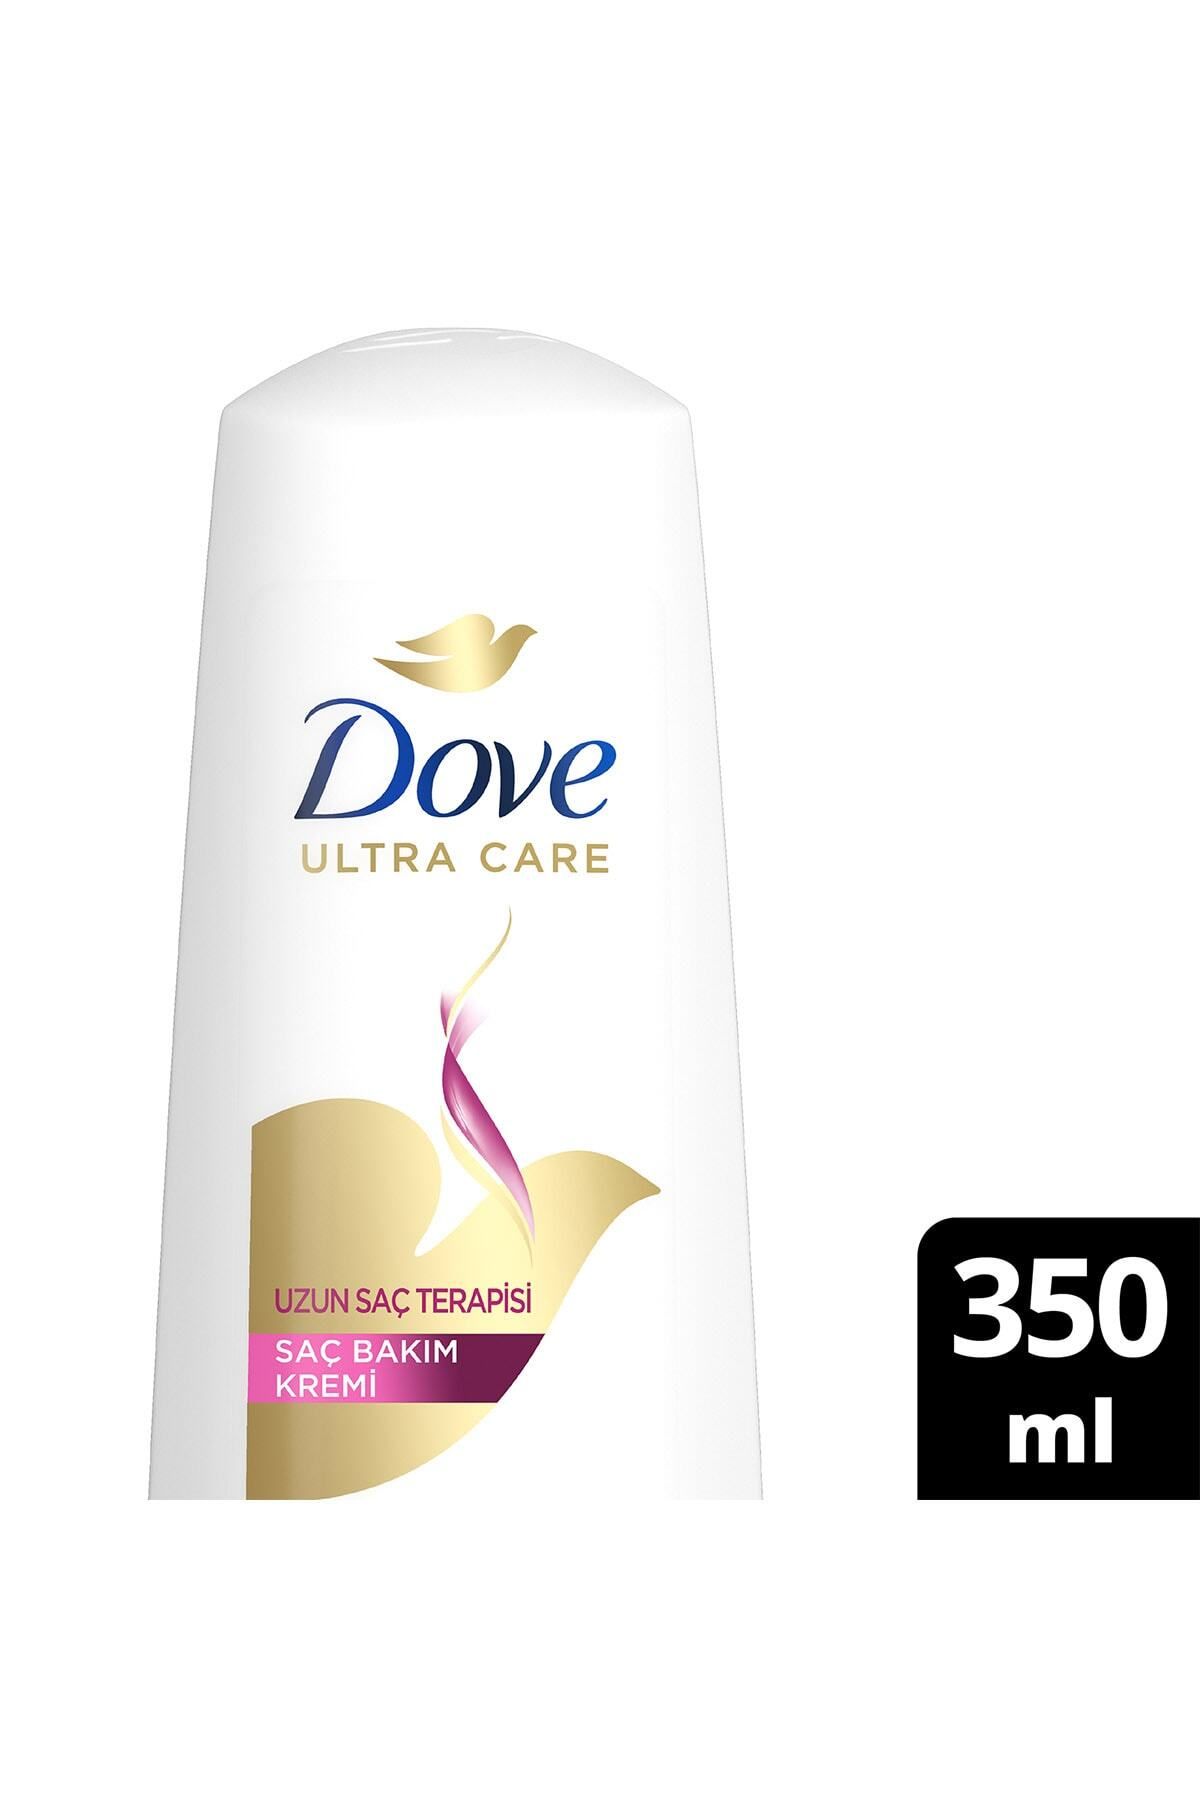 Dove Ultra Care Saç Bakım Kremi Uzun Saç Terapisi Uzun Yıpranmış Saçlar Için 350 ml